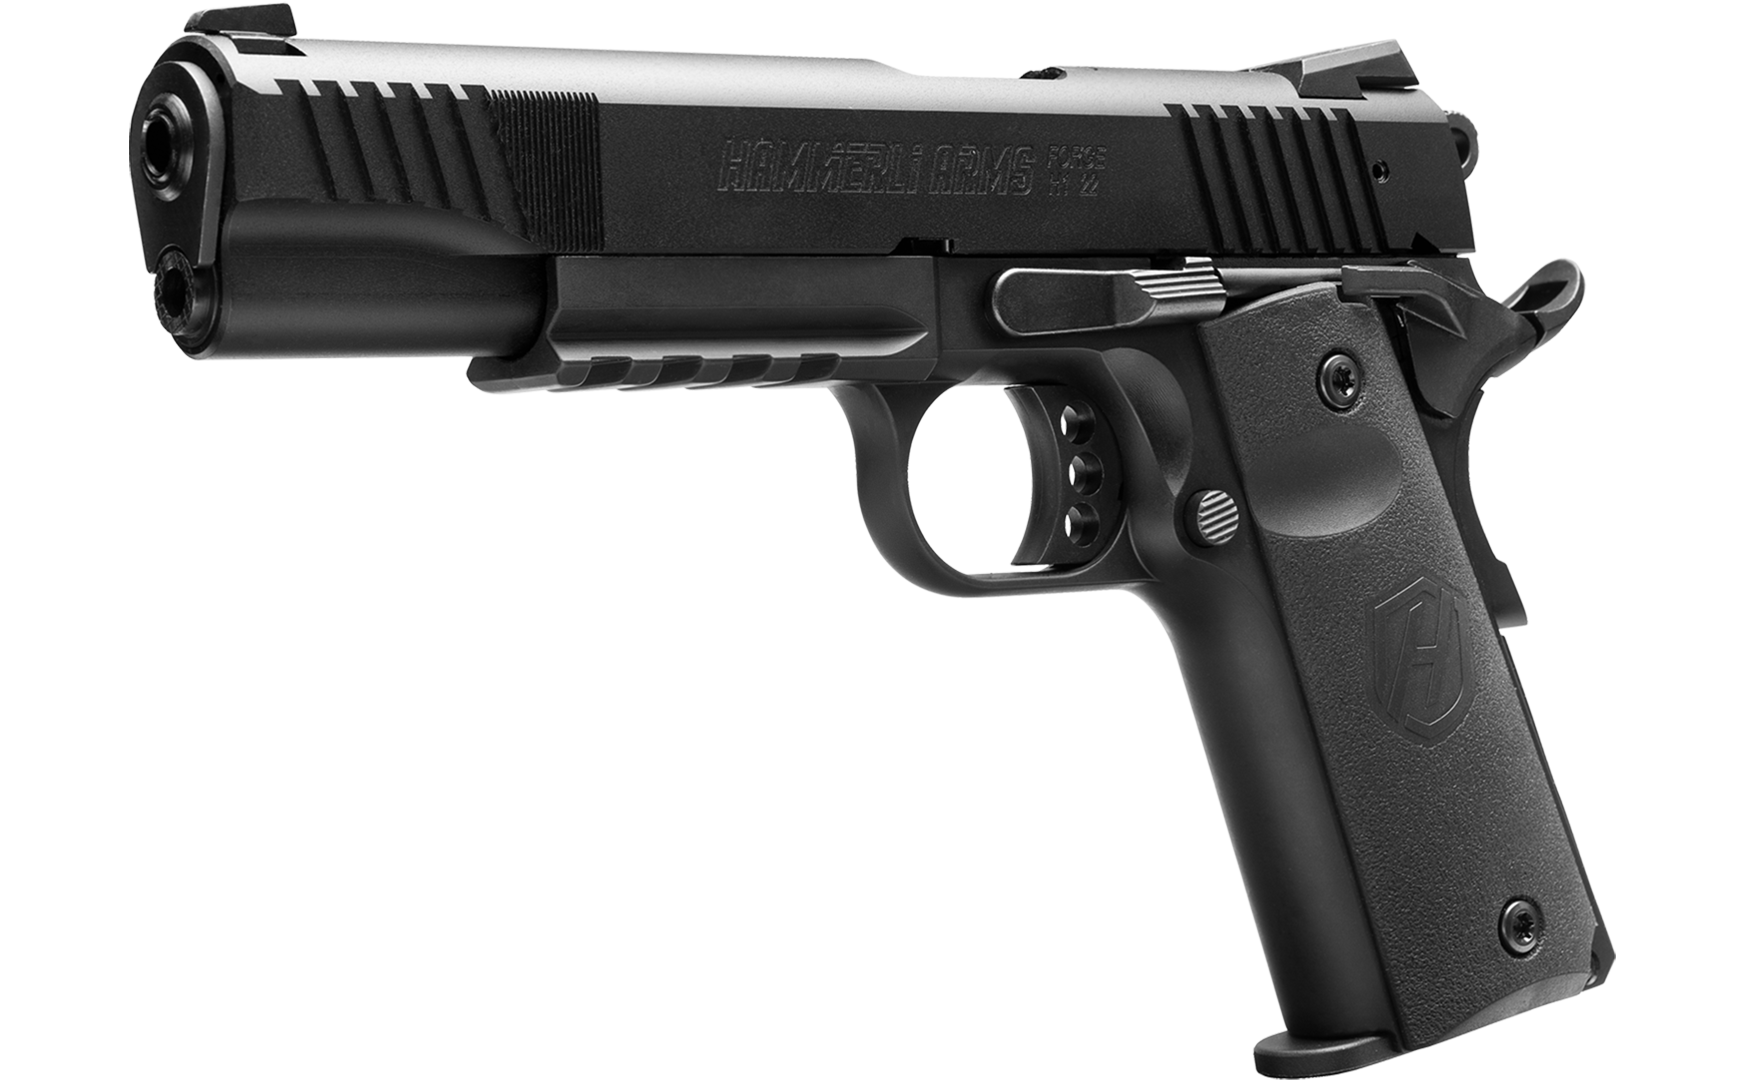 Hammerli Pistol Forge H1 5” - Quarter Left View